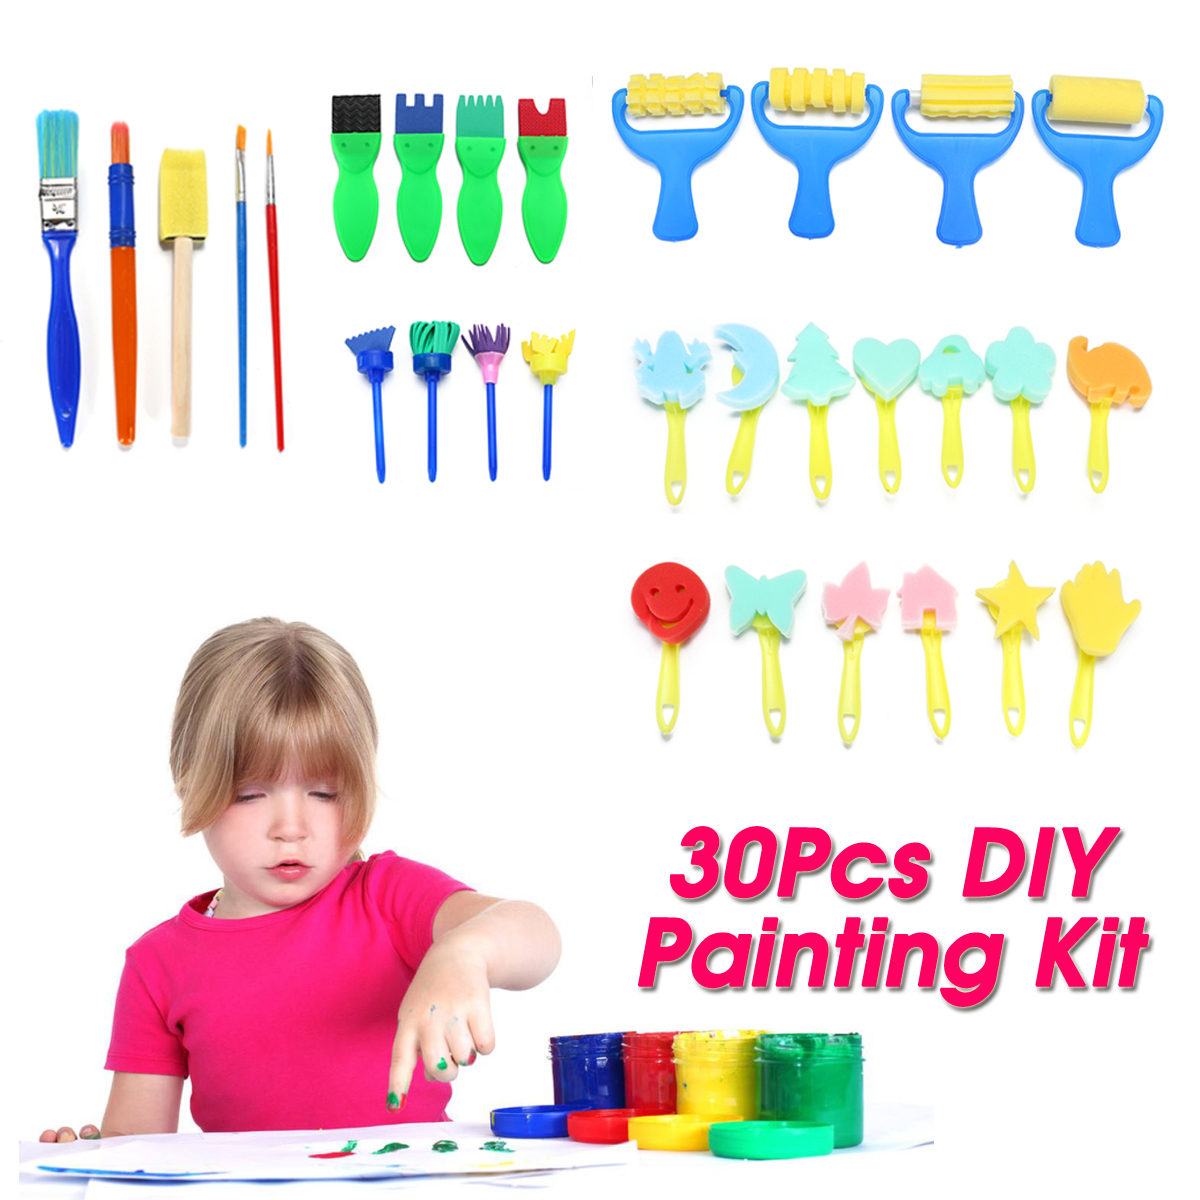 30pcs-Child-Paint-Roller-DIY-Painting-Toys-Sponge-Brush-Kit-Set-Graffiti-Drawing-Tools-for-Kids-Earl-1836475-1